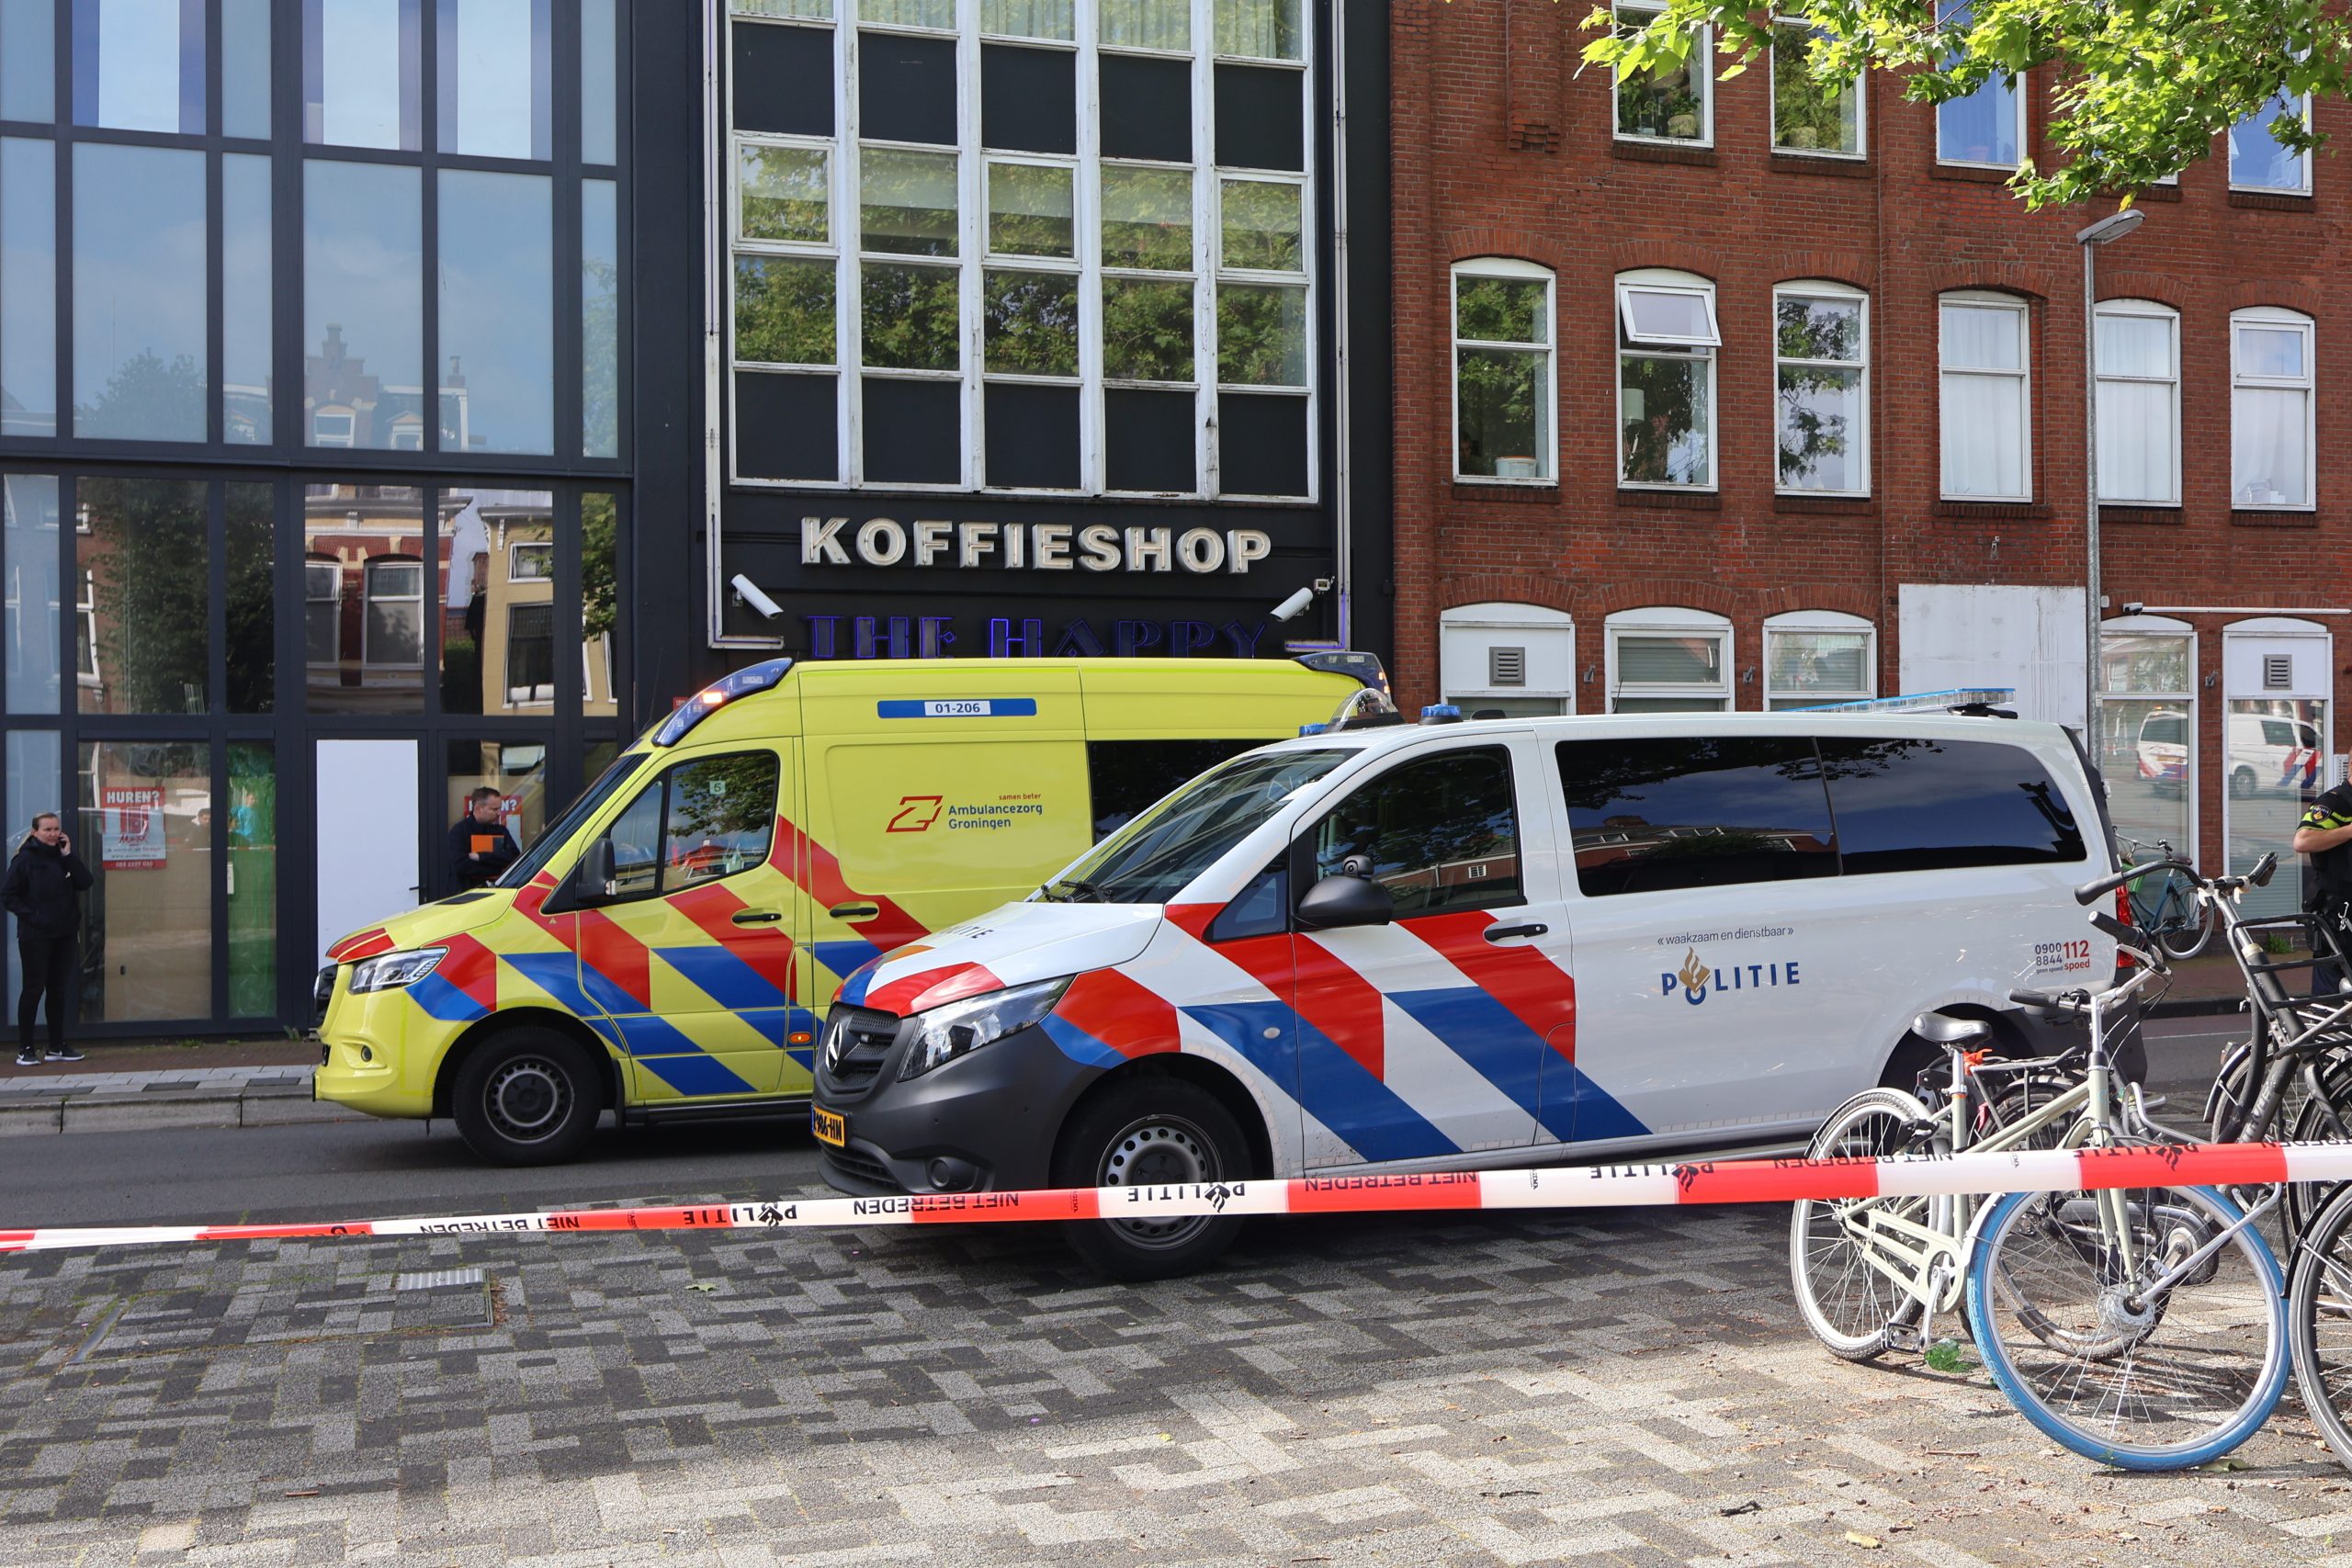 GRONINGEN - Donderdagmorgen 4 juli tegen 09.05 uur heeft een steekincident plaatsgevonden aan de Damsterdiep in Groningen. Bij het incident zouden meerdere personen gewond geraakt zijn. Waaronder